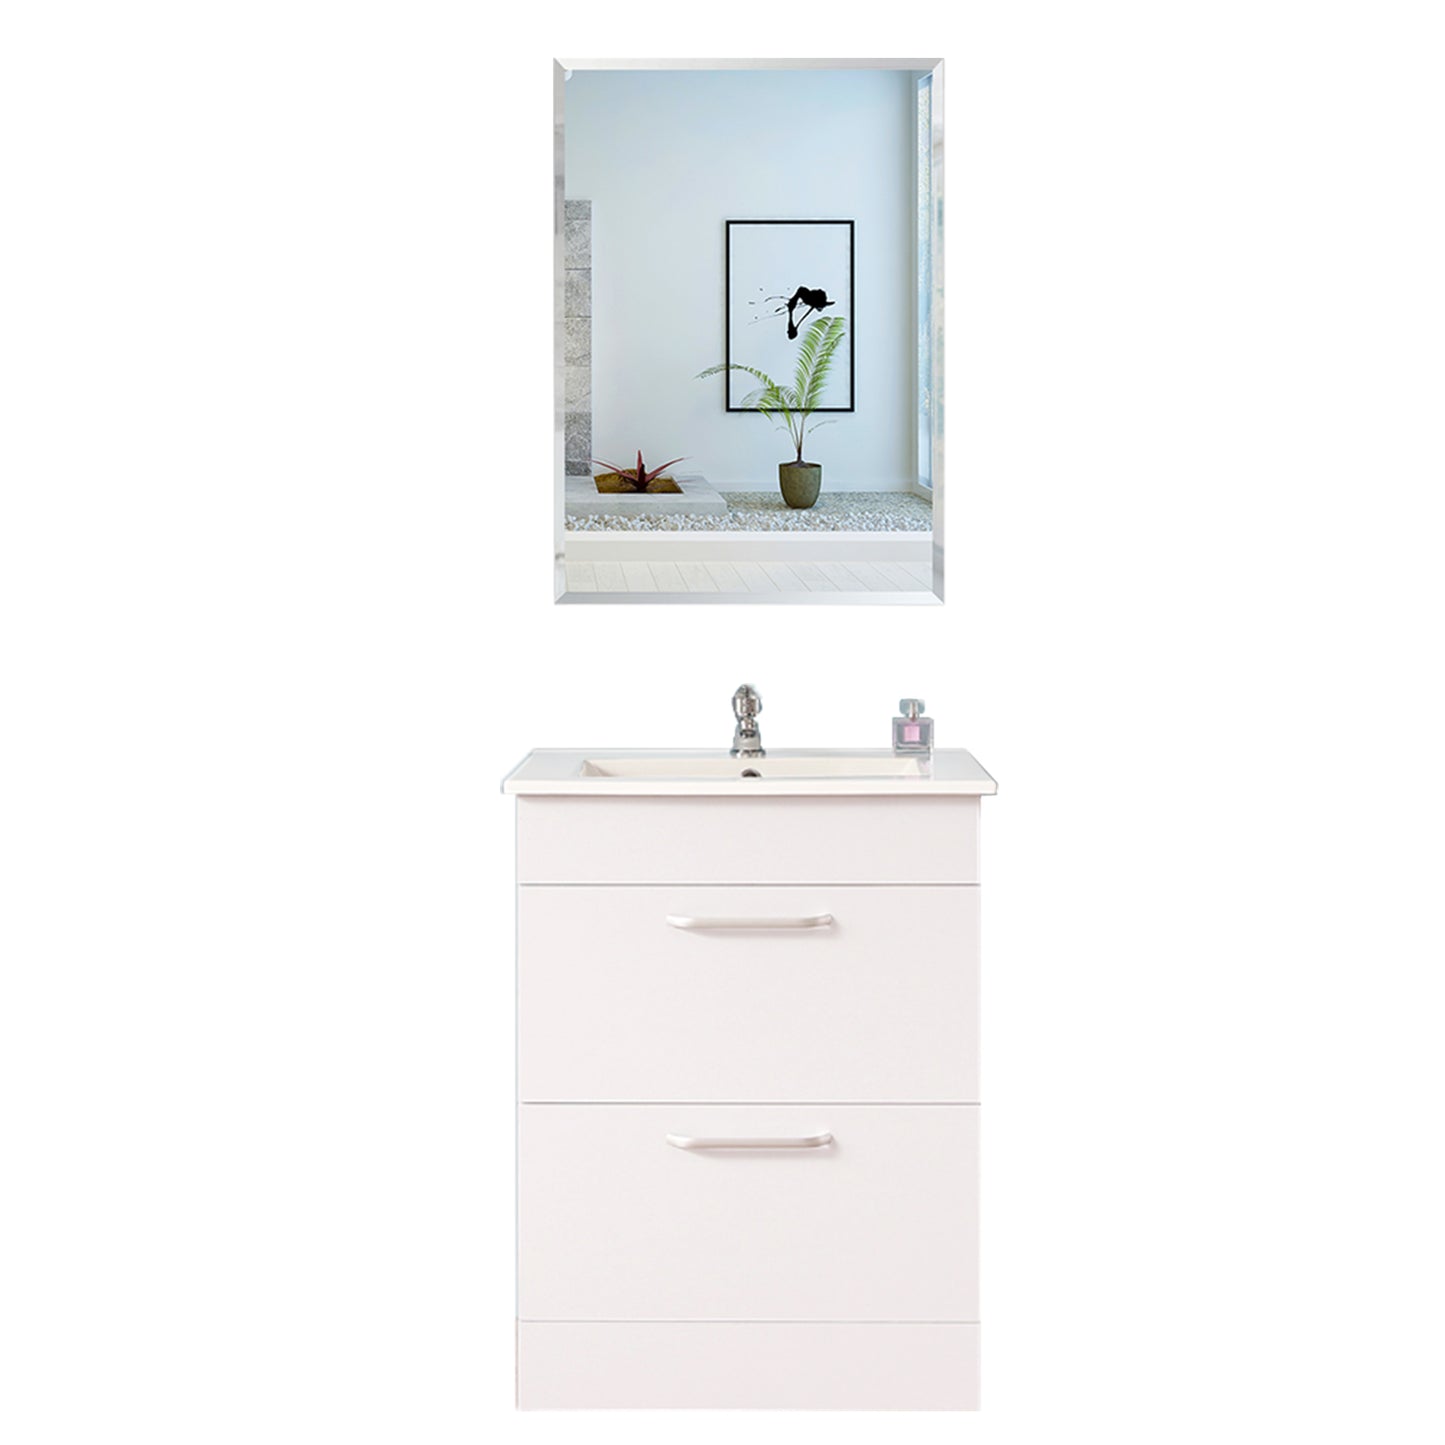 Faccettenspiegel 30-120 cm, 5 mm stark, Spiegel badspiegel kristallspiegel garderobenspiegel duschspiegel